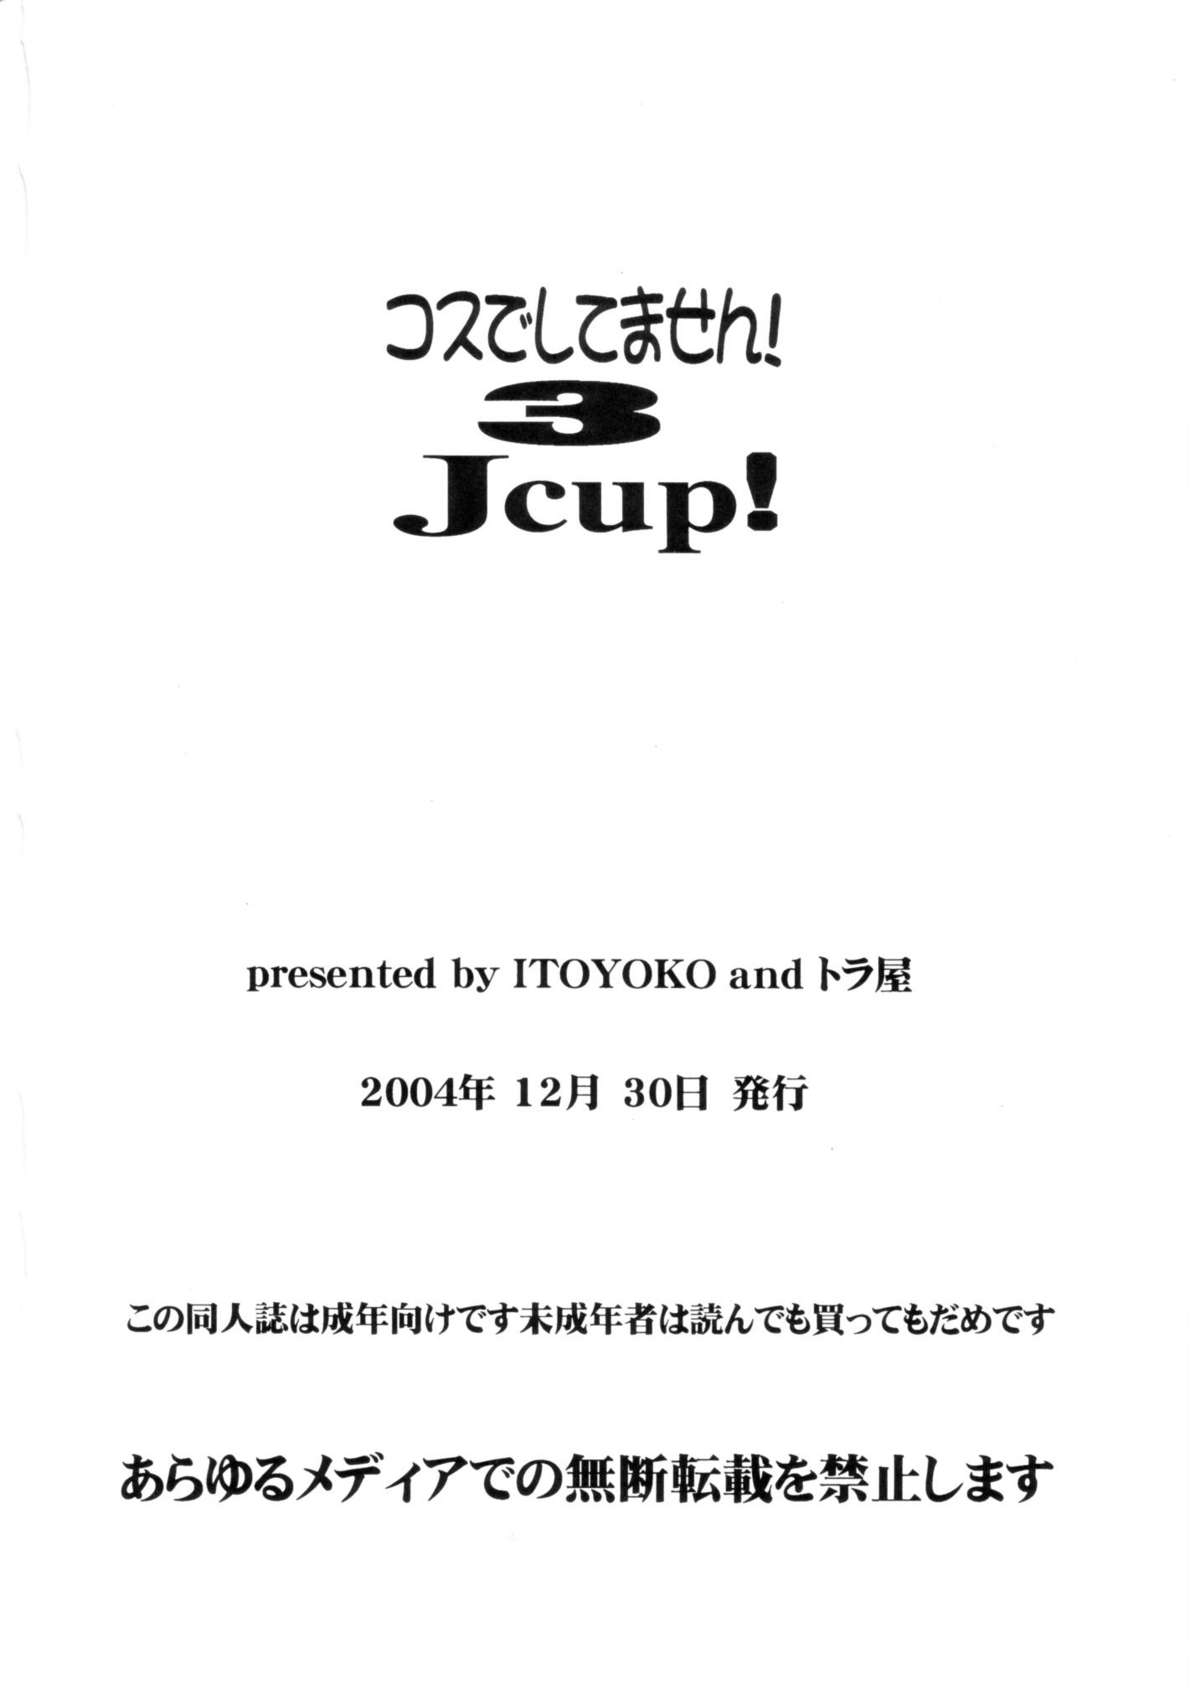 [Toraya] Cosu de Shitemasen! 3 Jcup! (Genshiken) [トラ屋 ] コスでしてません! 3 Jcup! (げんしけん)